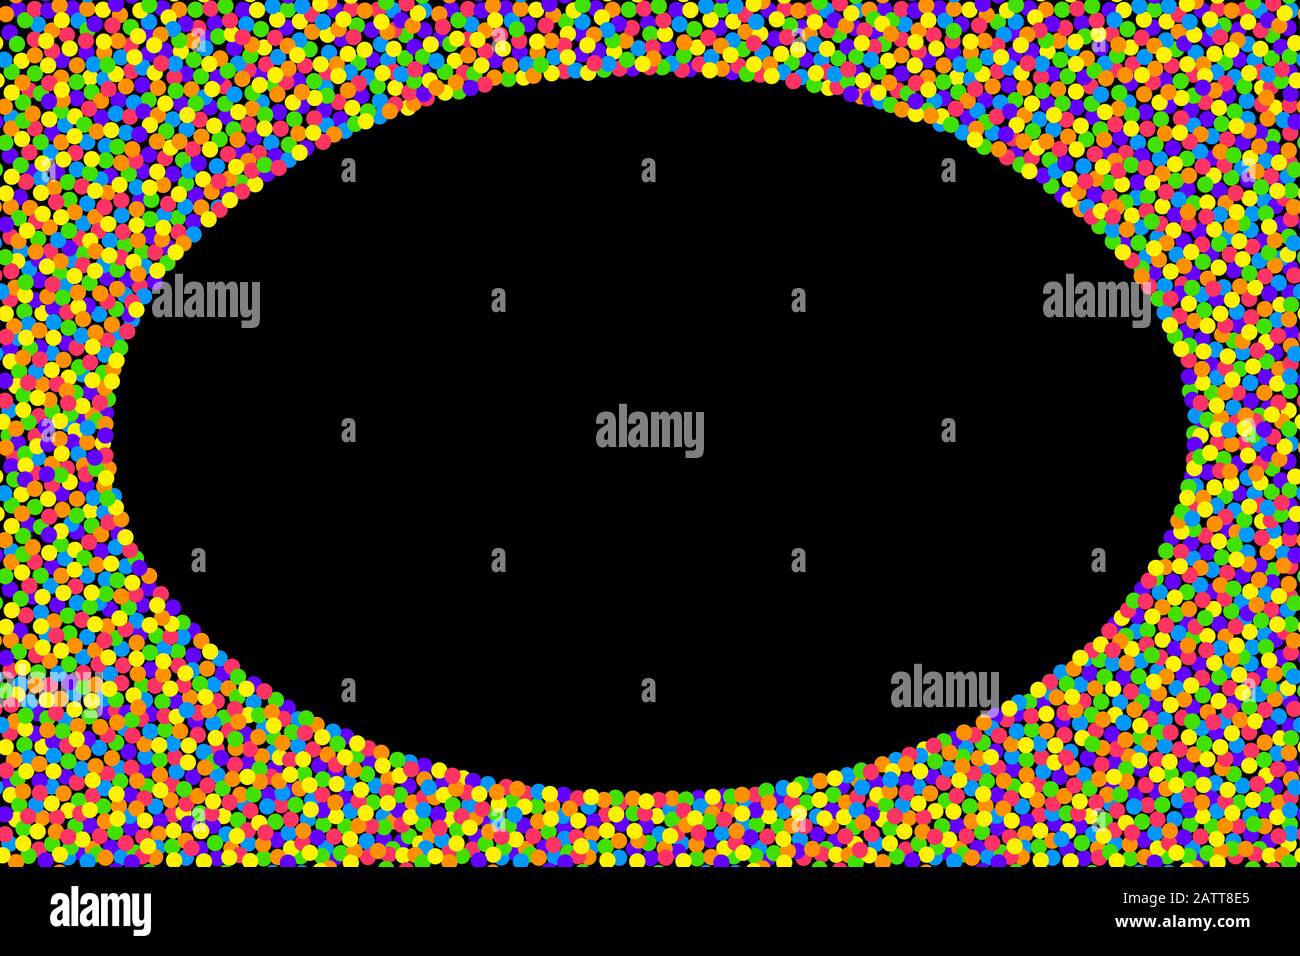 Farbenfroher Konfettirahmen auf schwarzem Hintergrund. Kleine Punkte in kräftigen und gesättigten Farben, zufällig auf einem schwarzen Rechteck verteilt und bilden eine Ellipse. Stockfoto